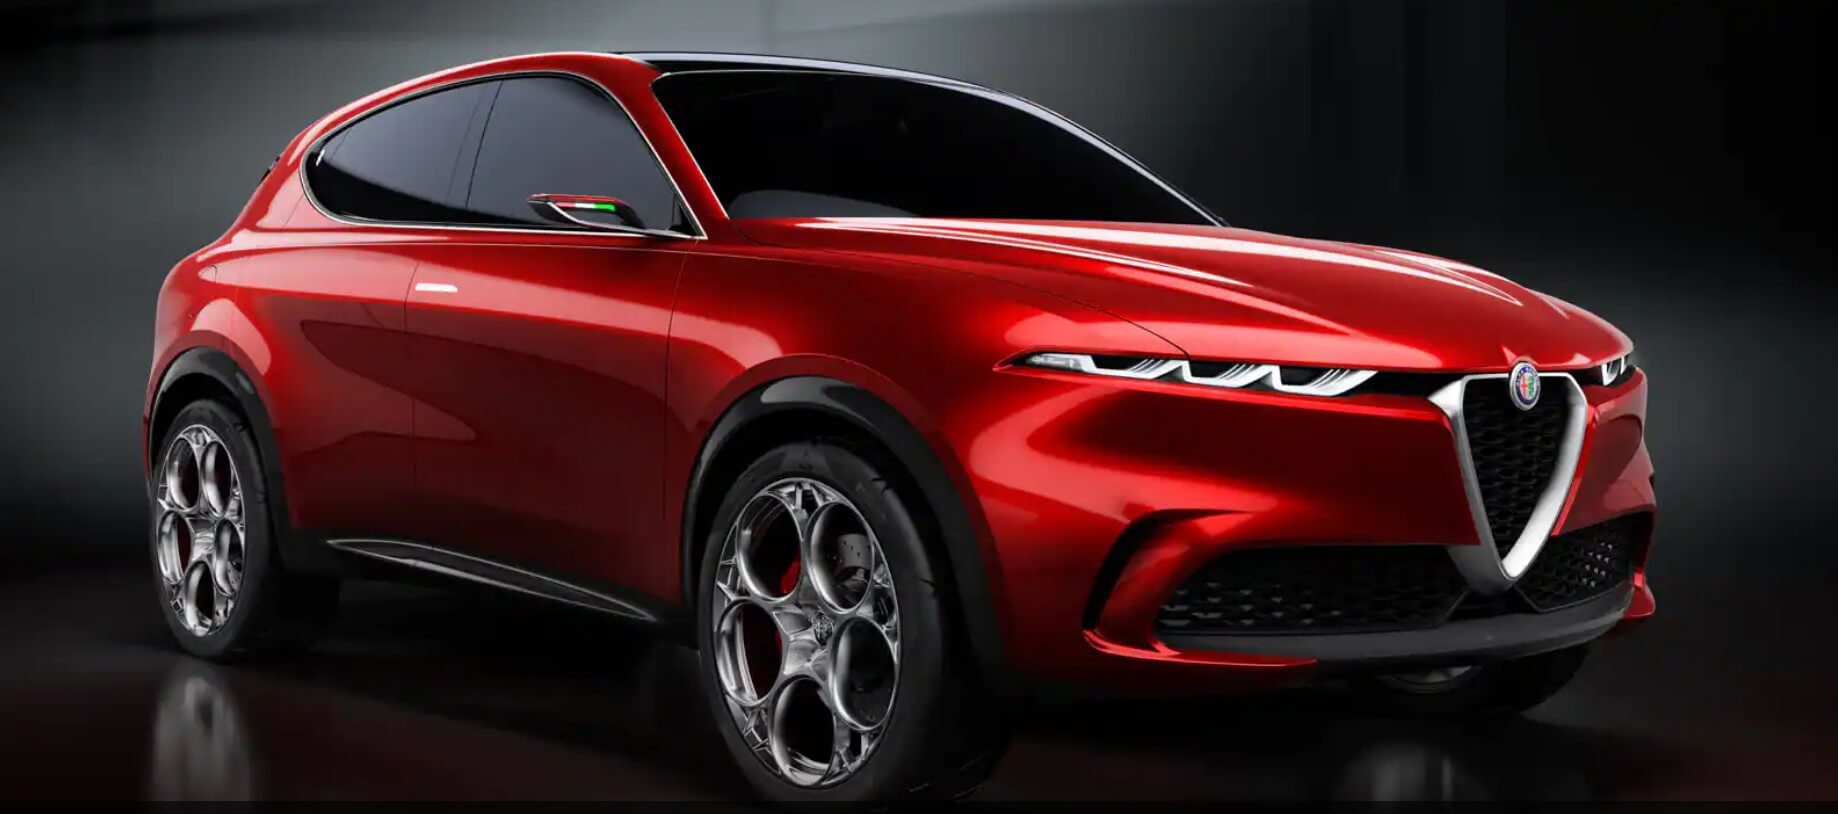 Alfa Romeo ha in programma di costruire un SUV elettrico per rivaleggiare con BMW iX, Mercedes EQS